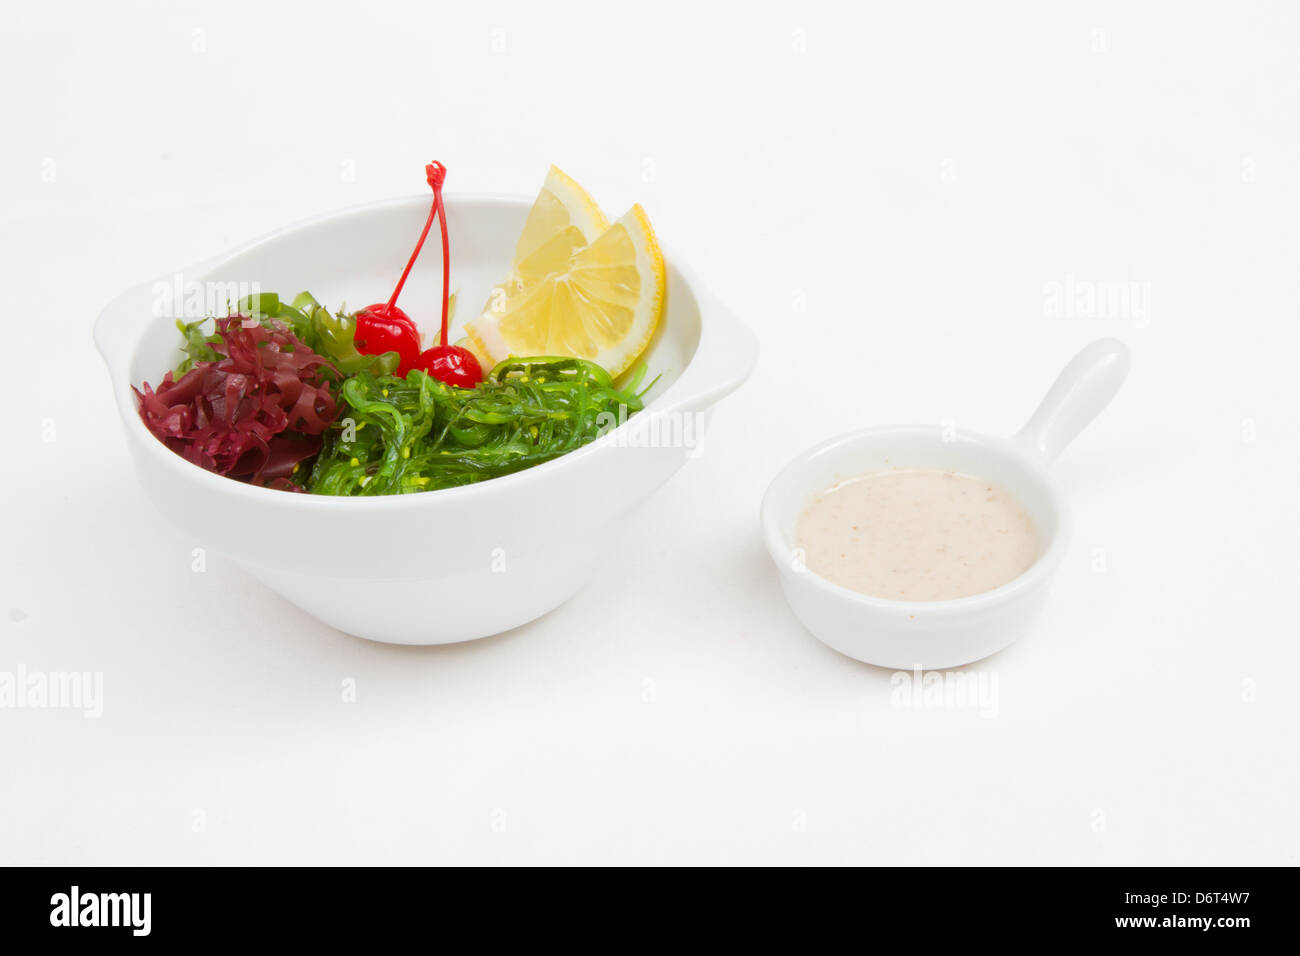 Japanese food isolated on white Stock Photo